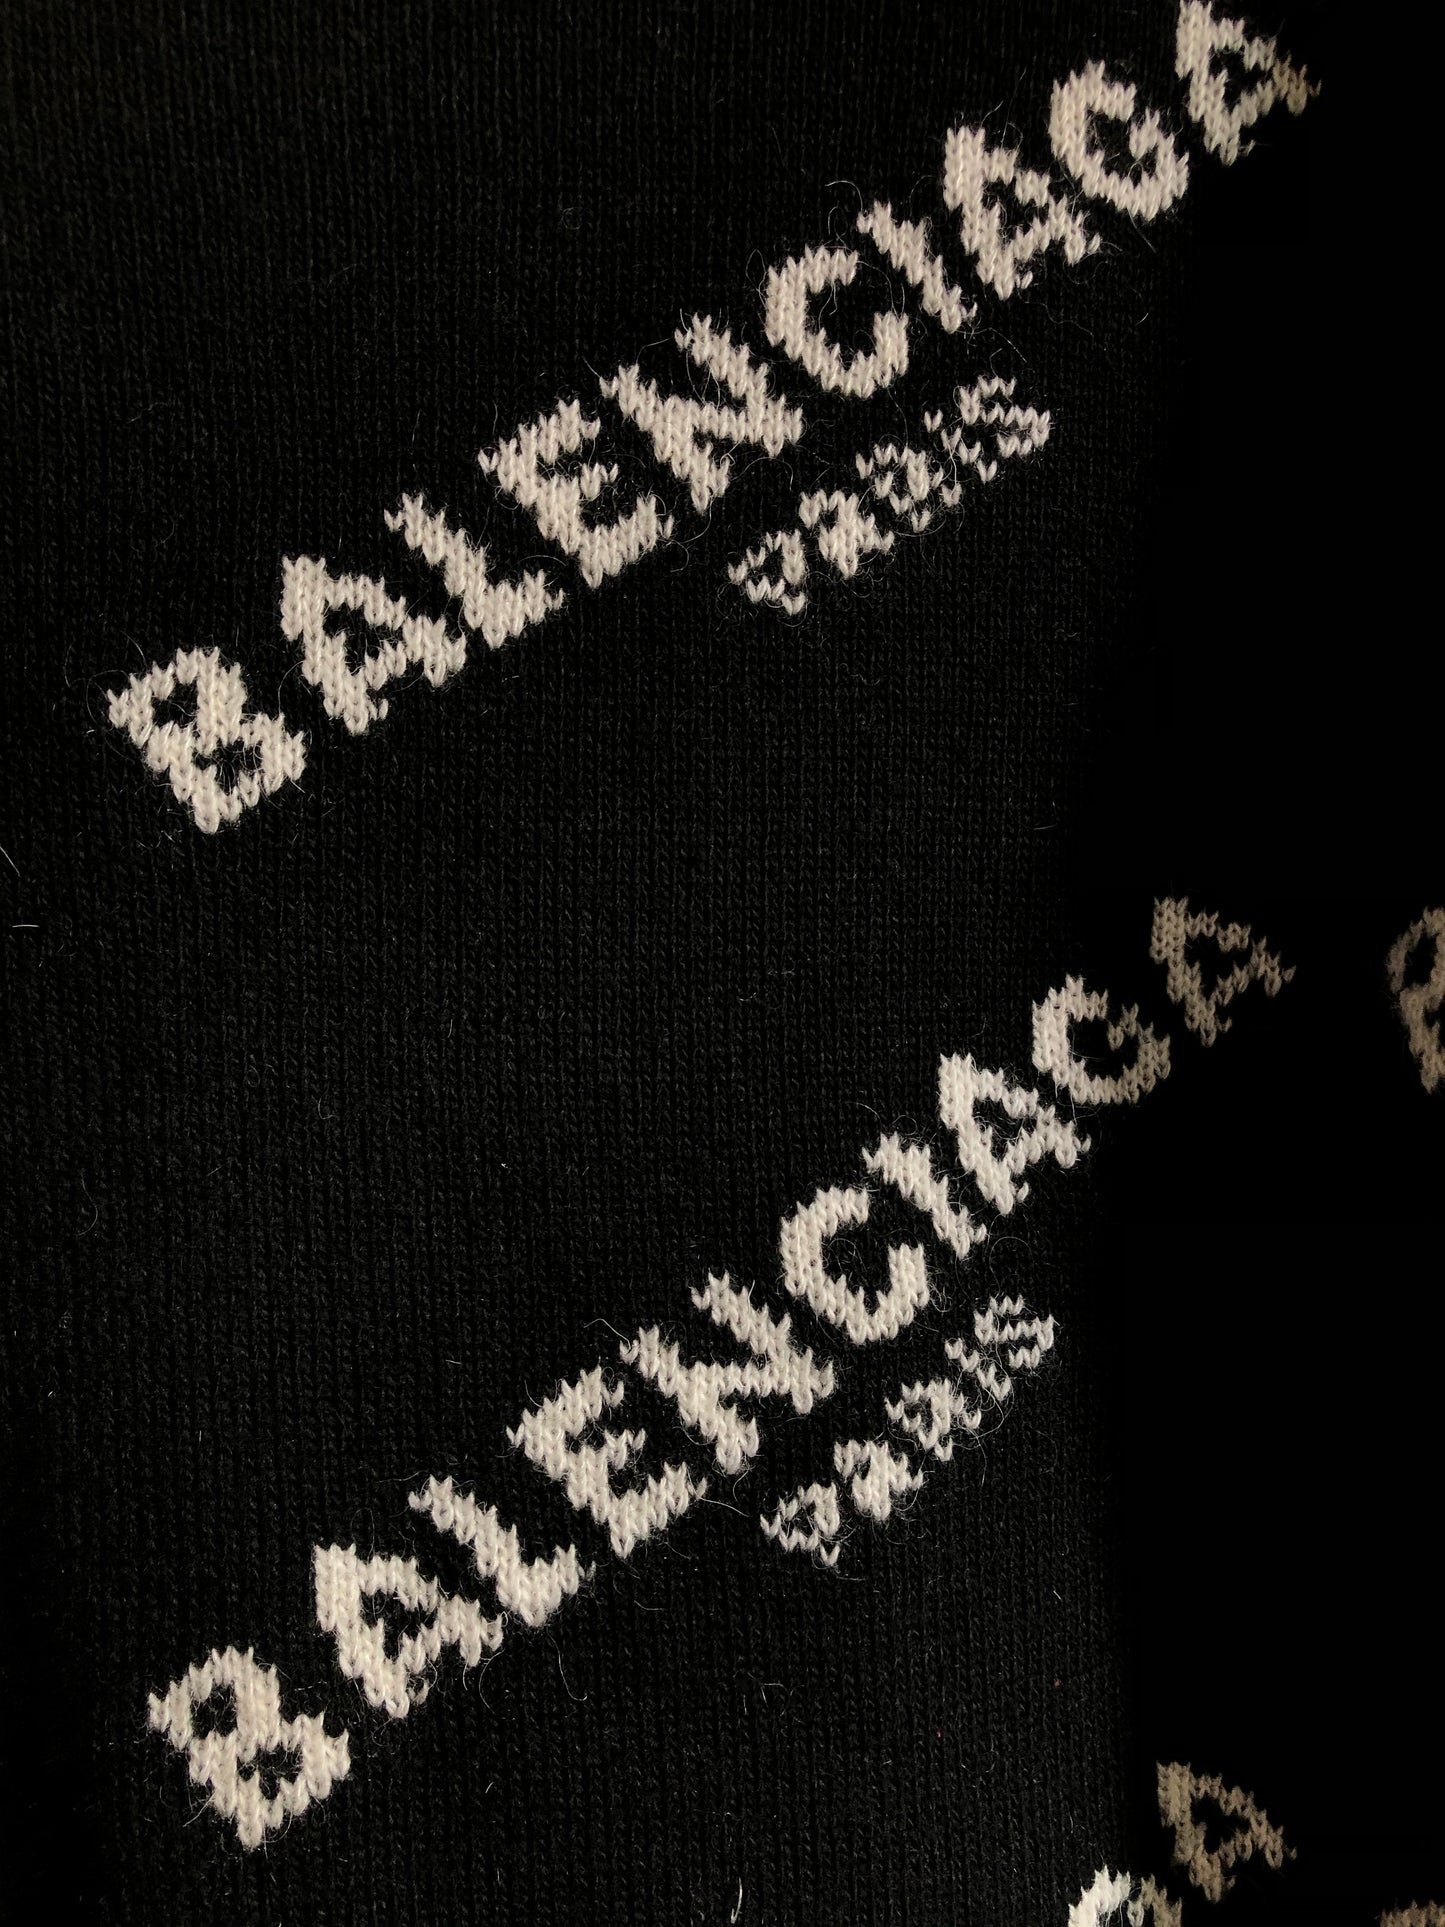 Balenciaga Bootleg Sweater